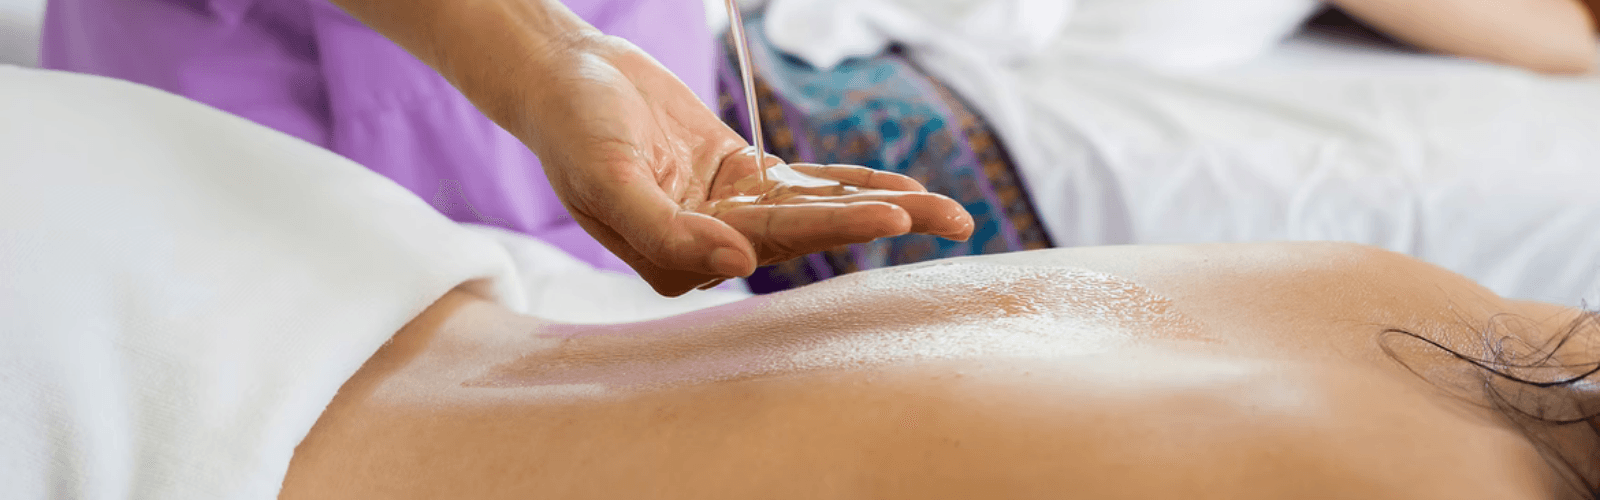 deep tissue massage service in ibiza